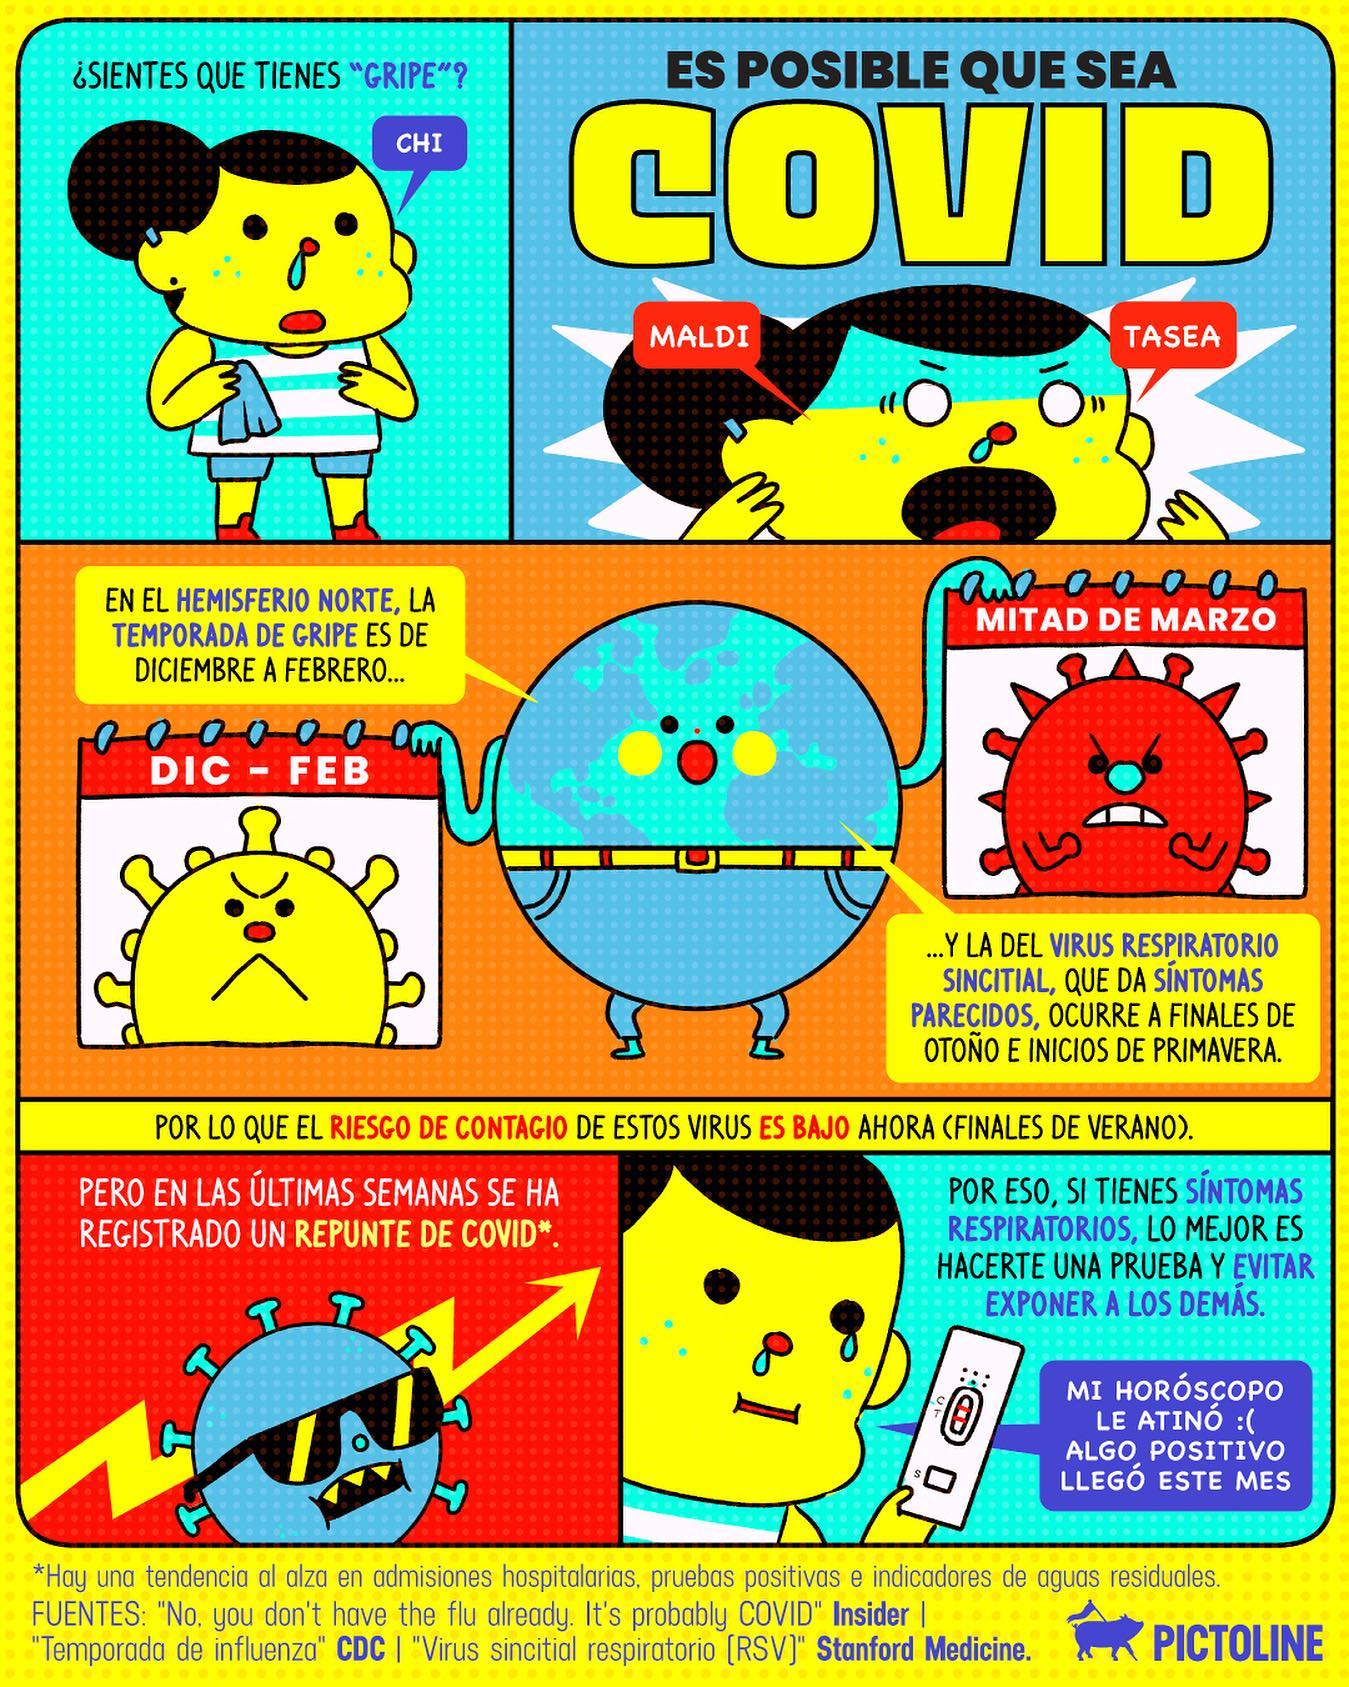 ¿Sientes que tienes “gripe” 🤧? Sorpresa: es posible que sea COVID 🙃 #covid #virusrespiratorio #virus #sintomasrespiratorios #gripe